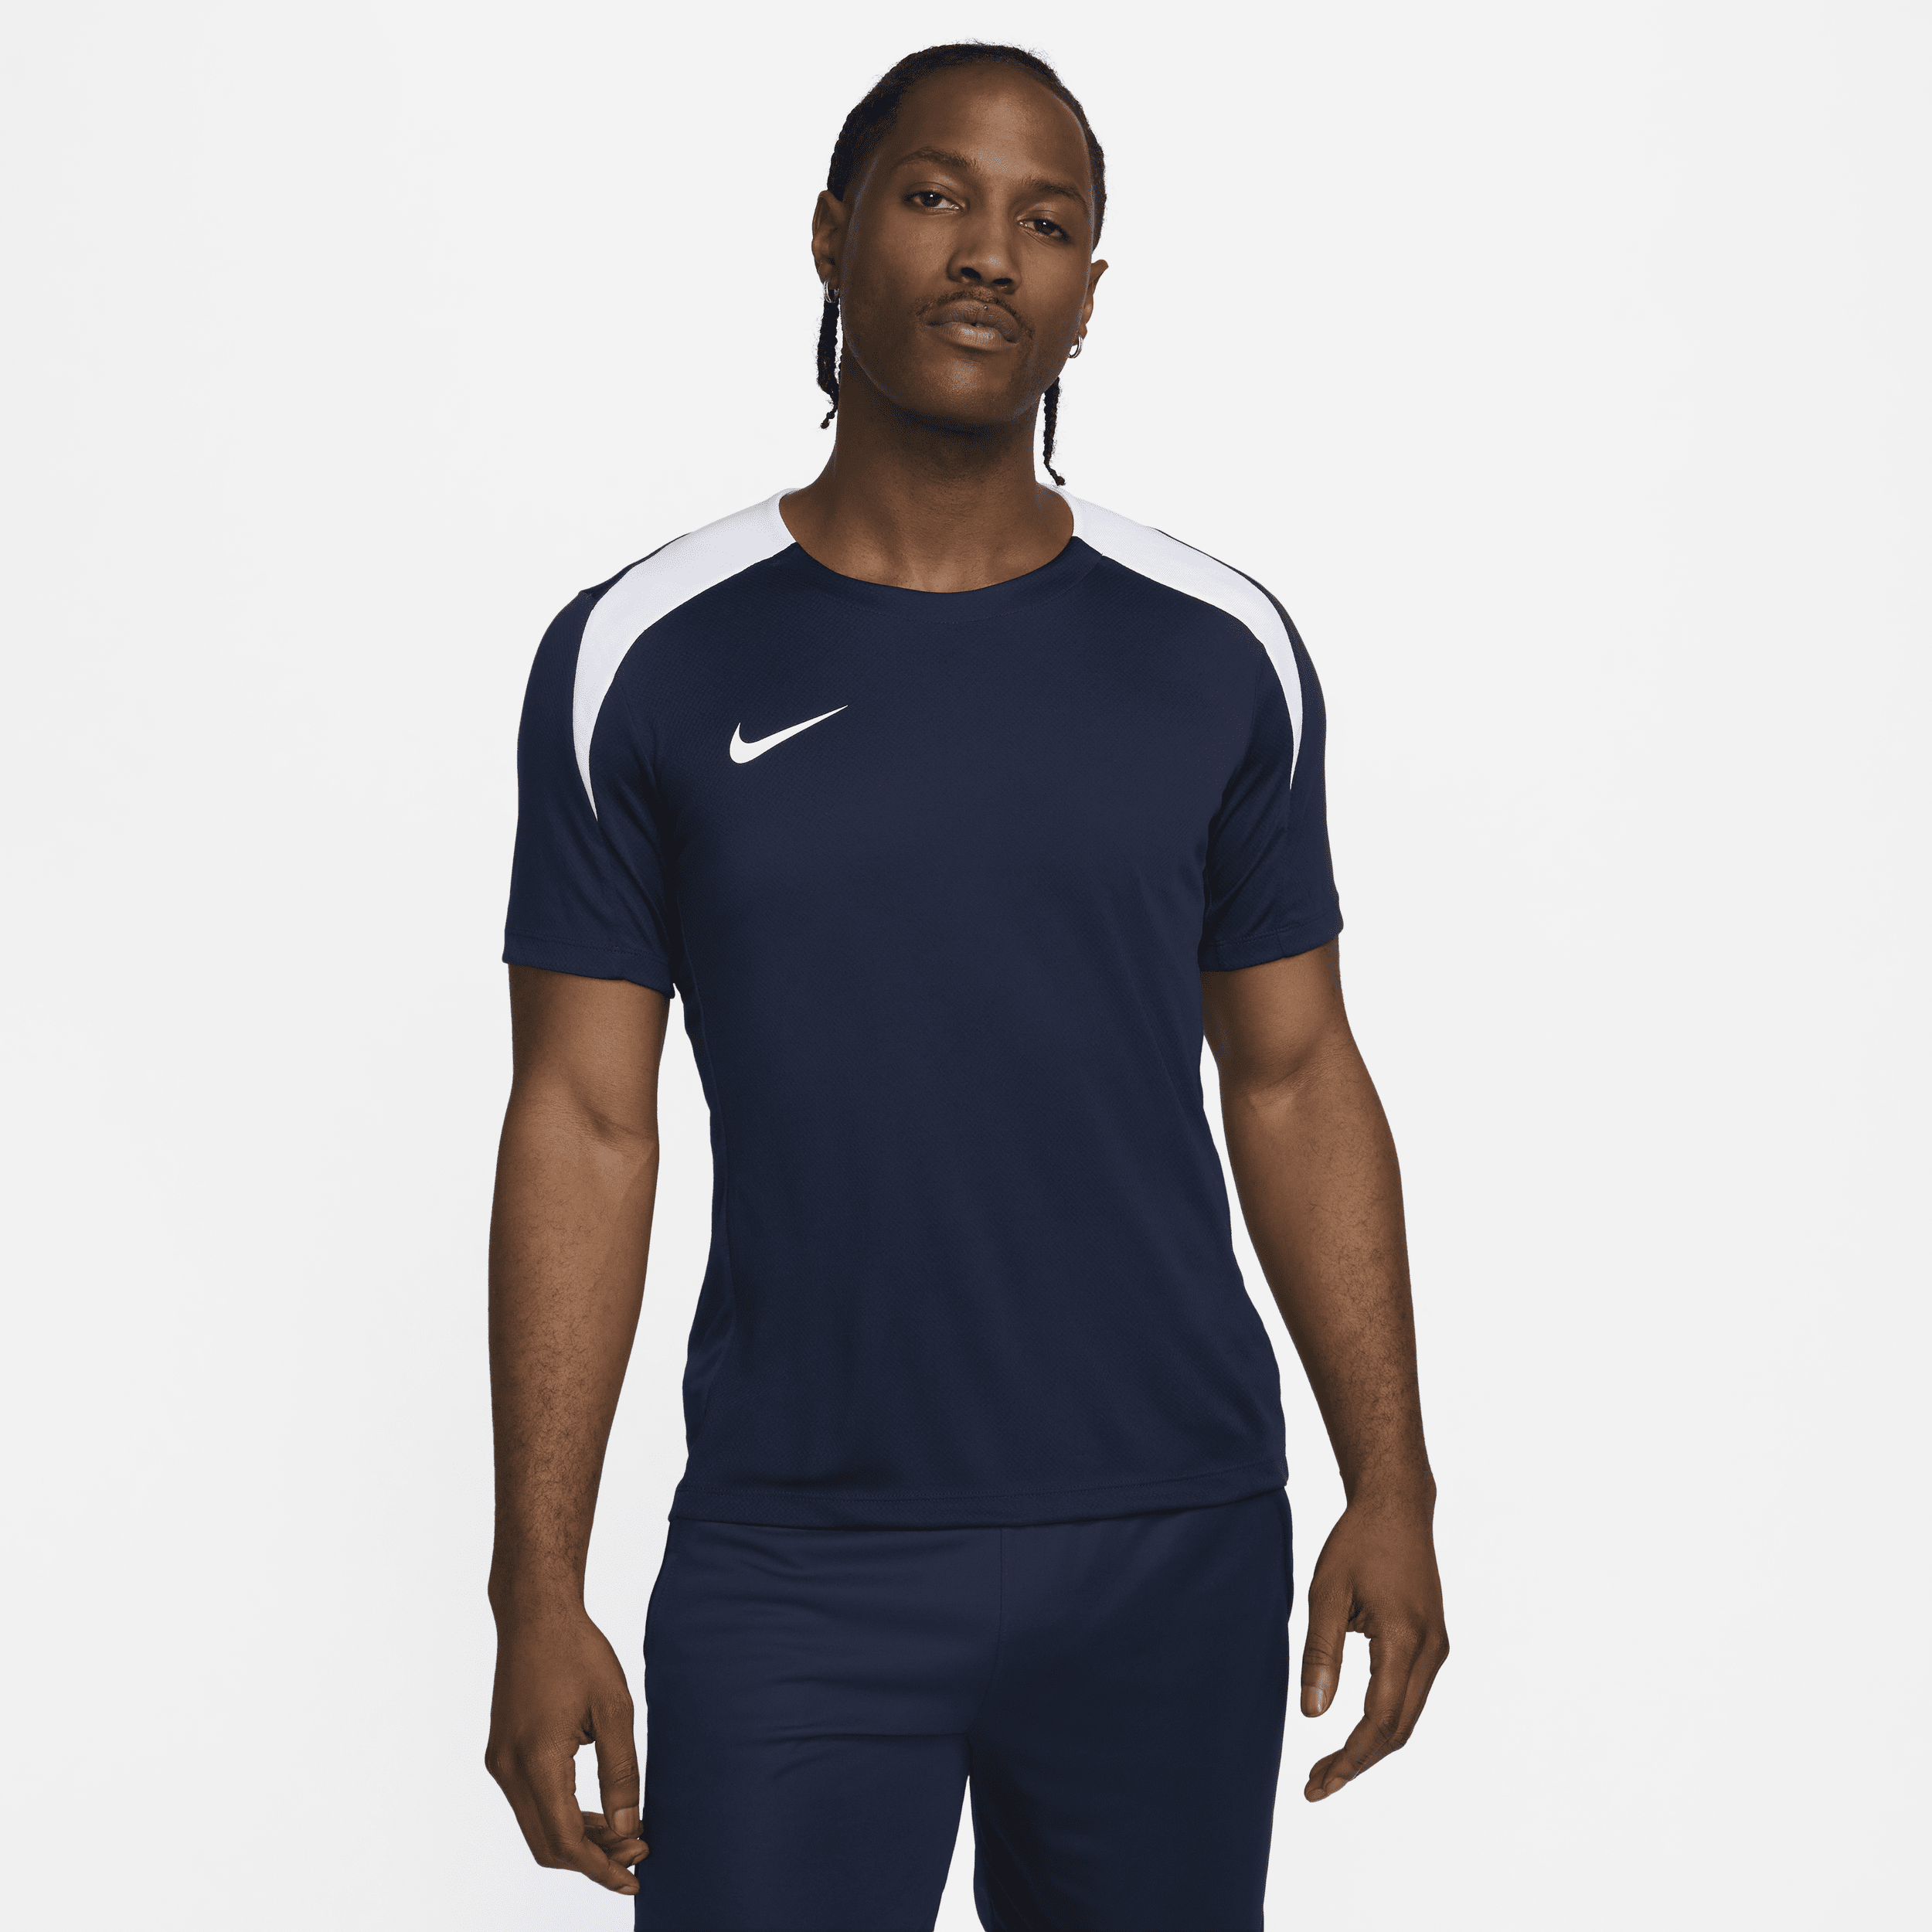 Nike Strike voetbaltop met Dri-FIT en korte mouwen voor heren - Blauw